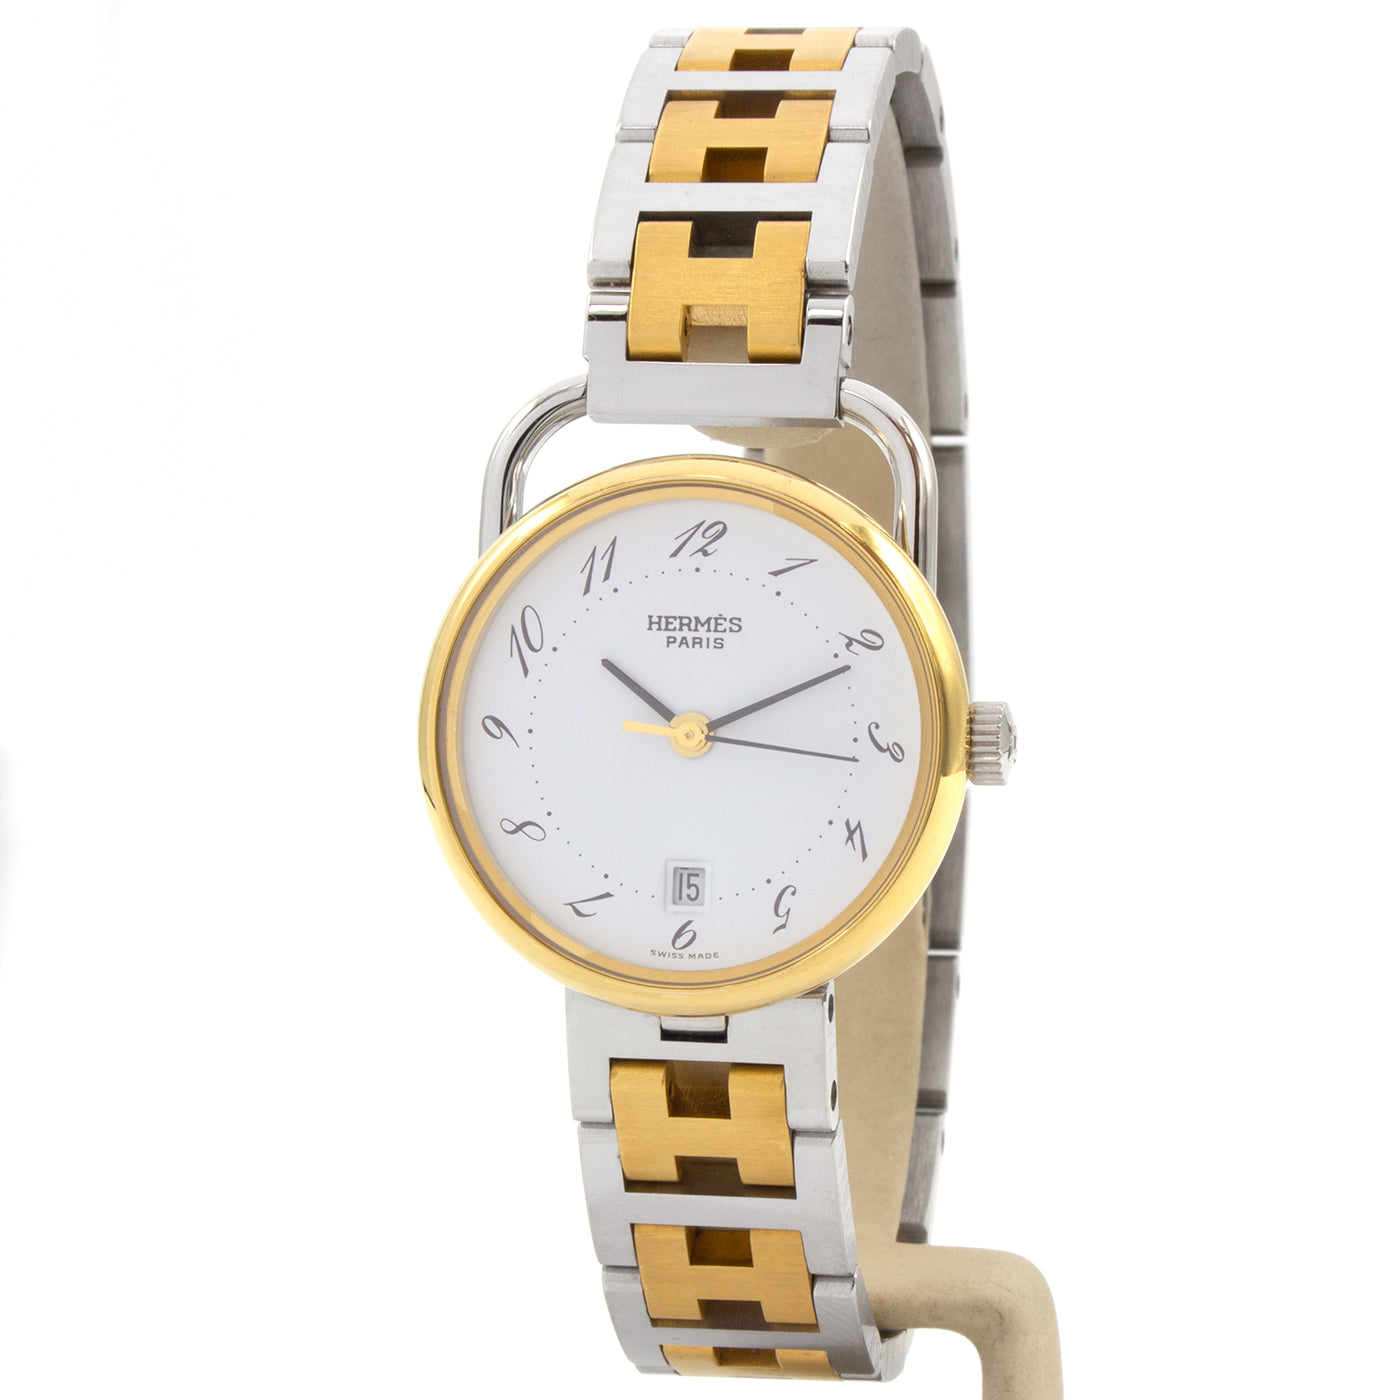 Hermes Arceau 25mm watch